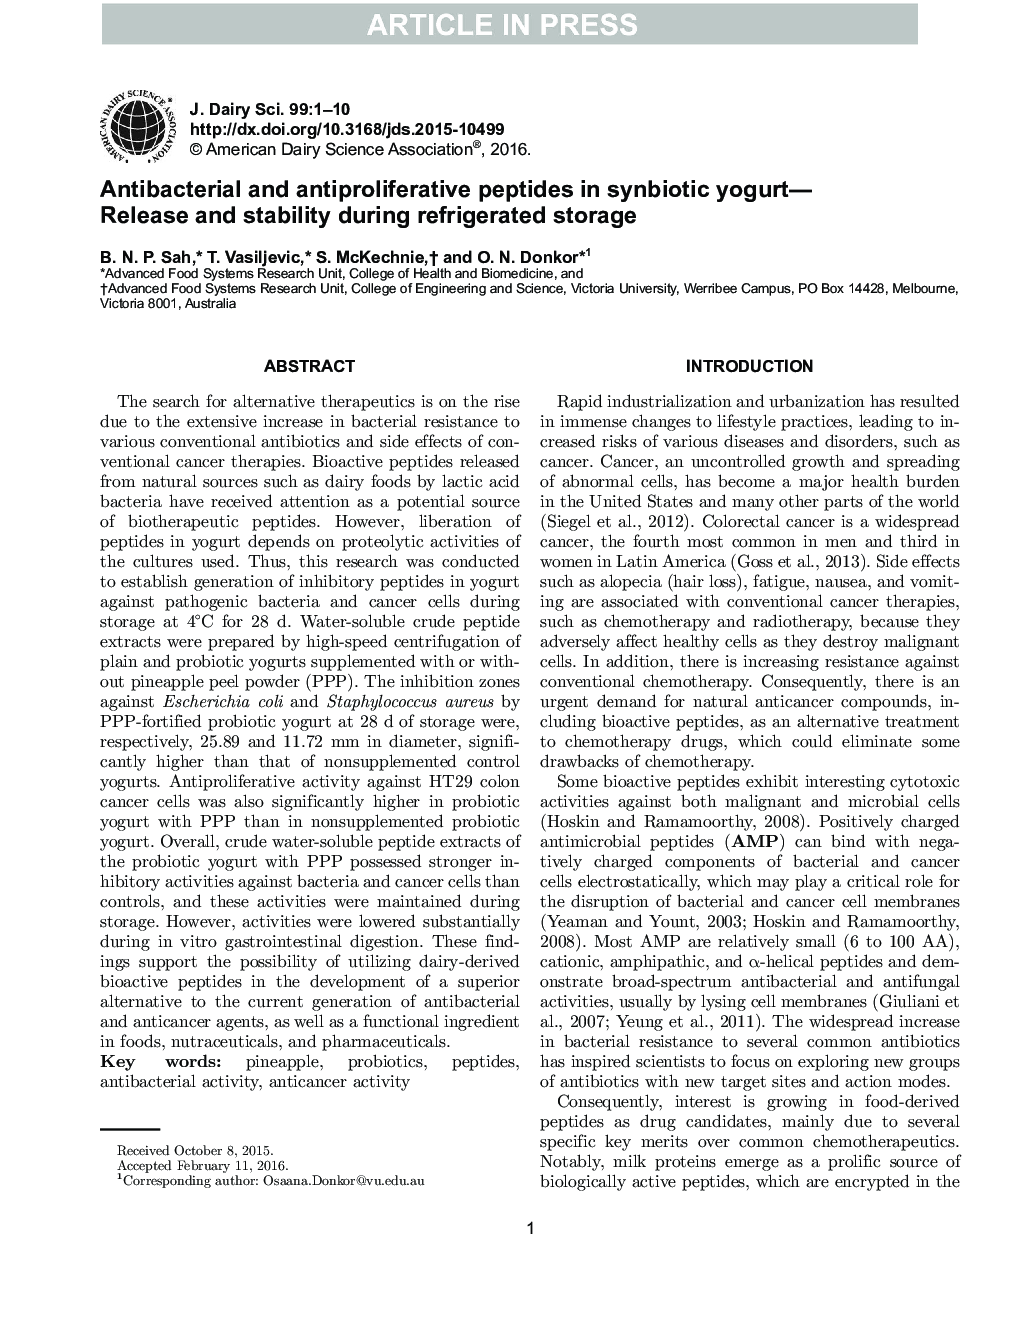 پپتیدهای ضد باکتری و ضد انعقادی در ماست سینبیوتیک-انتشار و پایداری در هنگام ذخیره سازی یخچال 